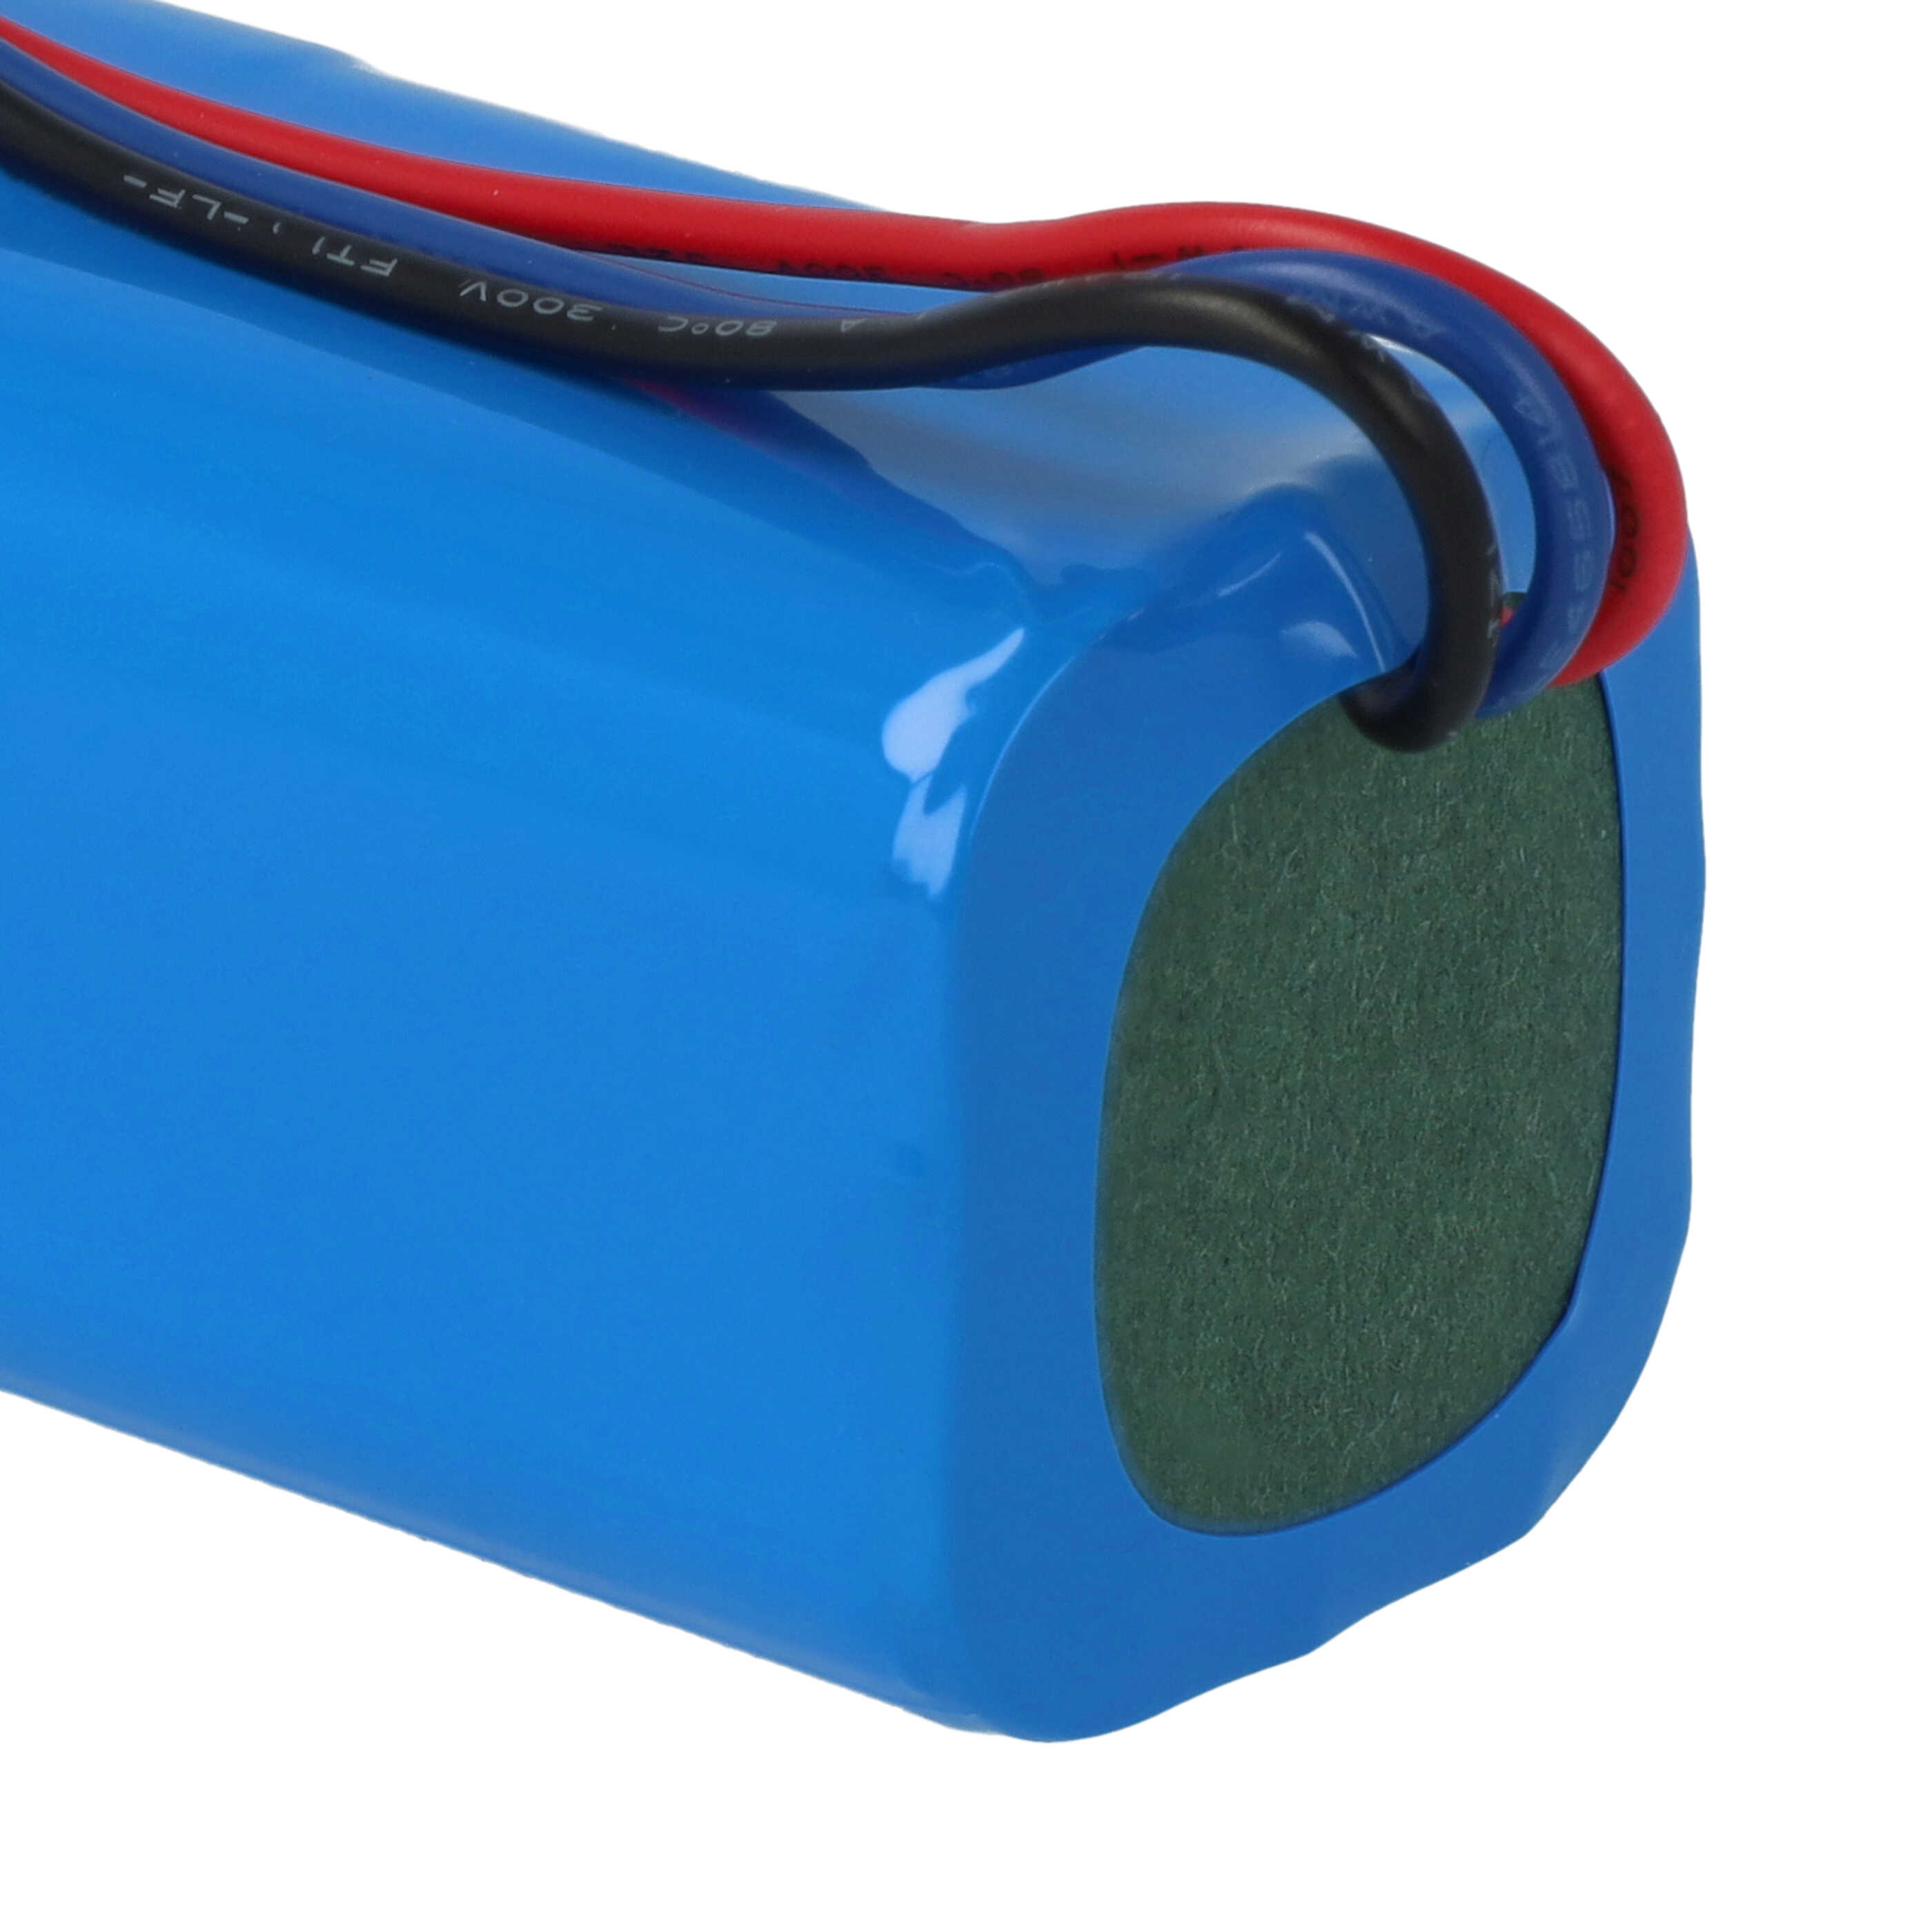 Batterie remplace Blaupunkt 6.60.40.01-0 pour robot aspirateur - 5200mAh 14,4V Li-ion